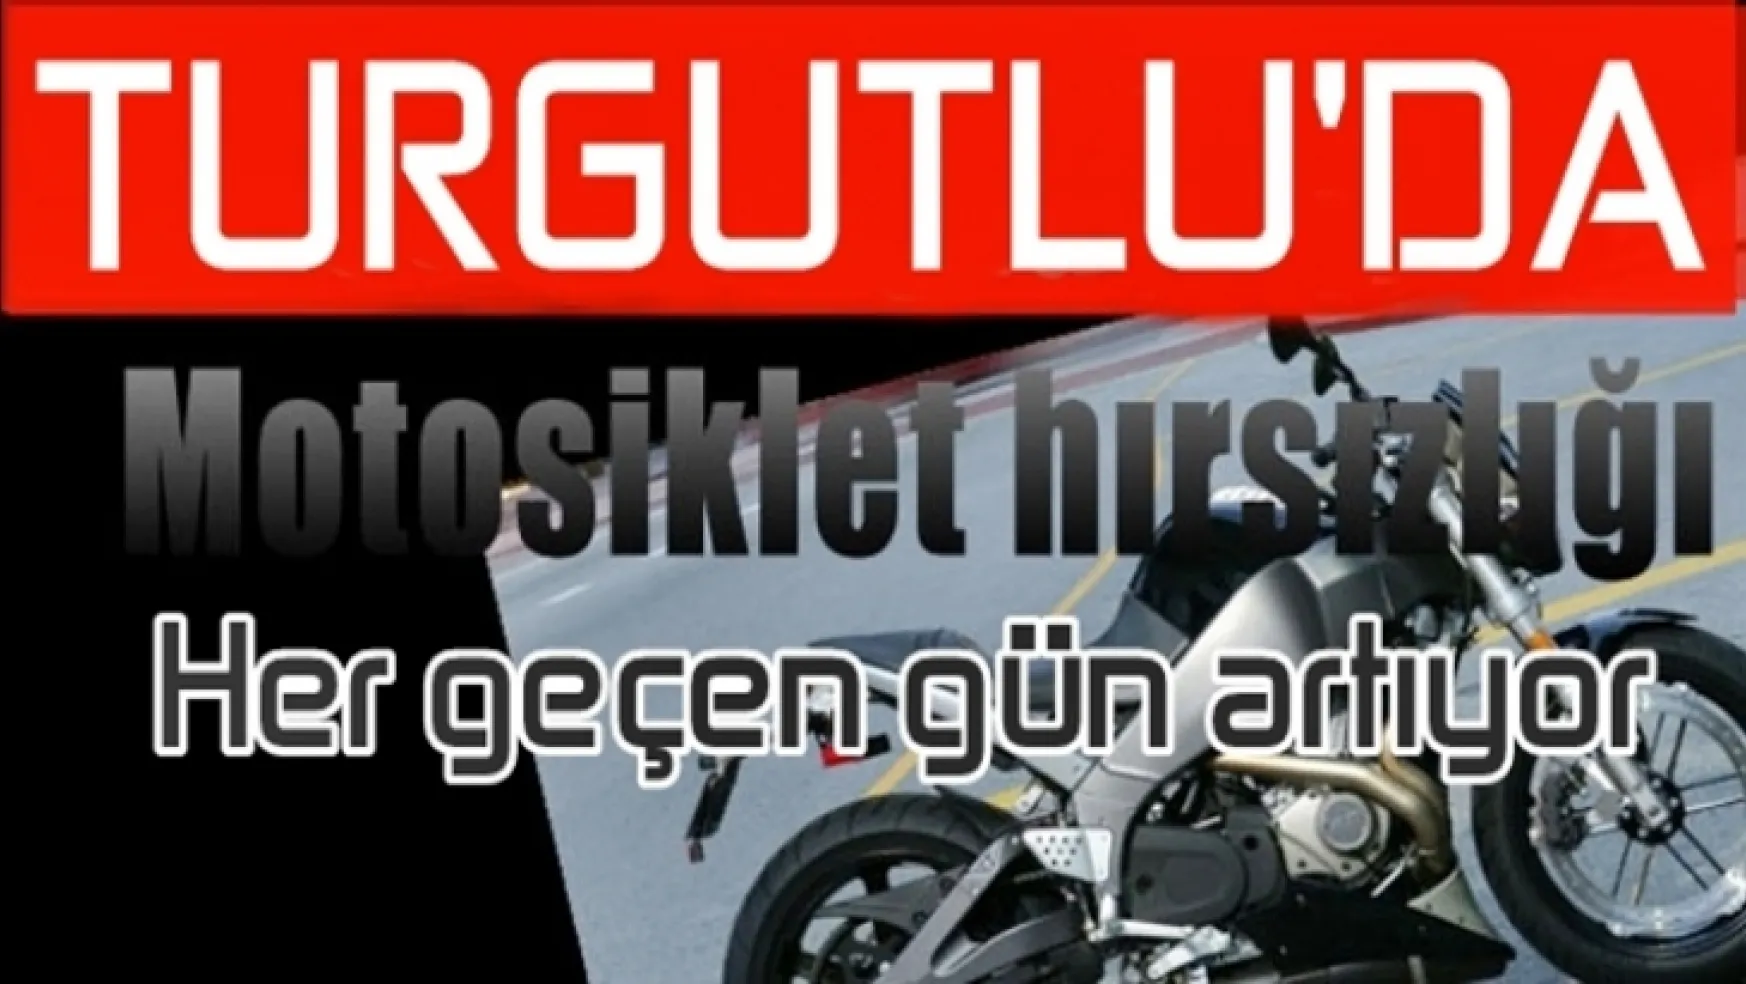 Turgutlu'da günde en az 1 motosiklet çalınıyor